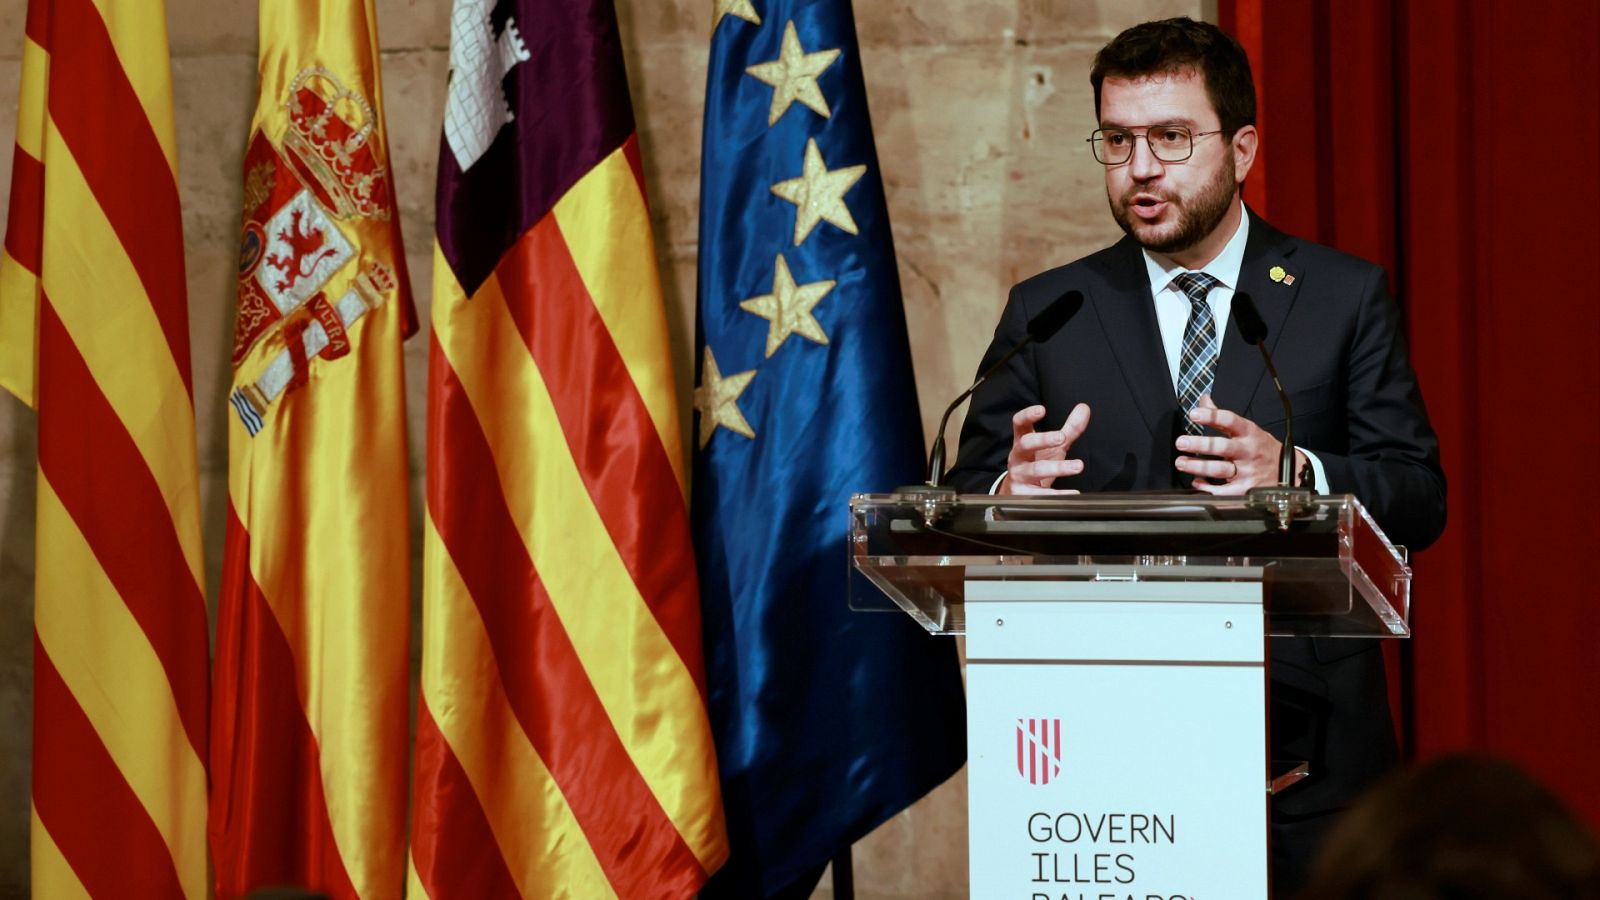 Pere Aragonès defiende la inmersión lingüística pese a la sentencia del Supremo: "El catalán en la escuela no se toca"